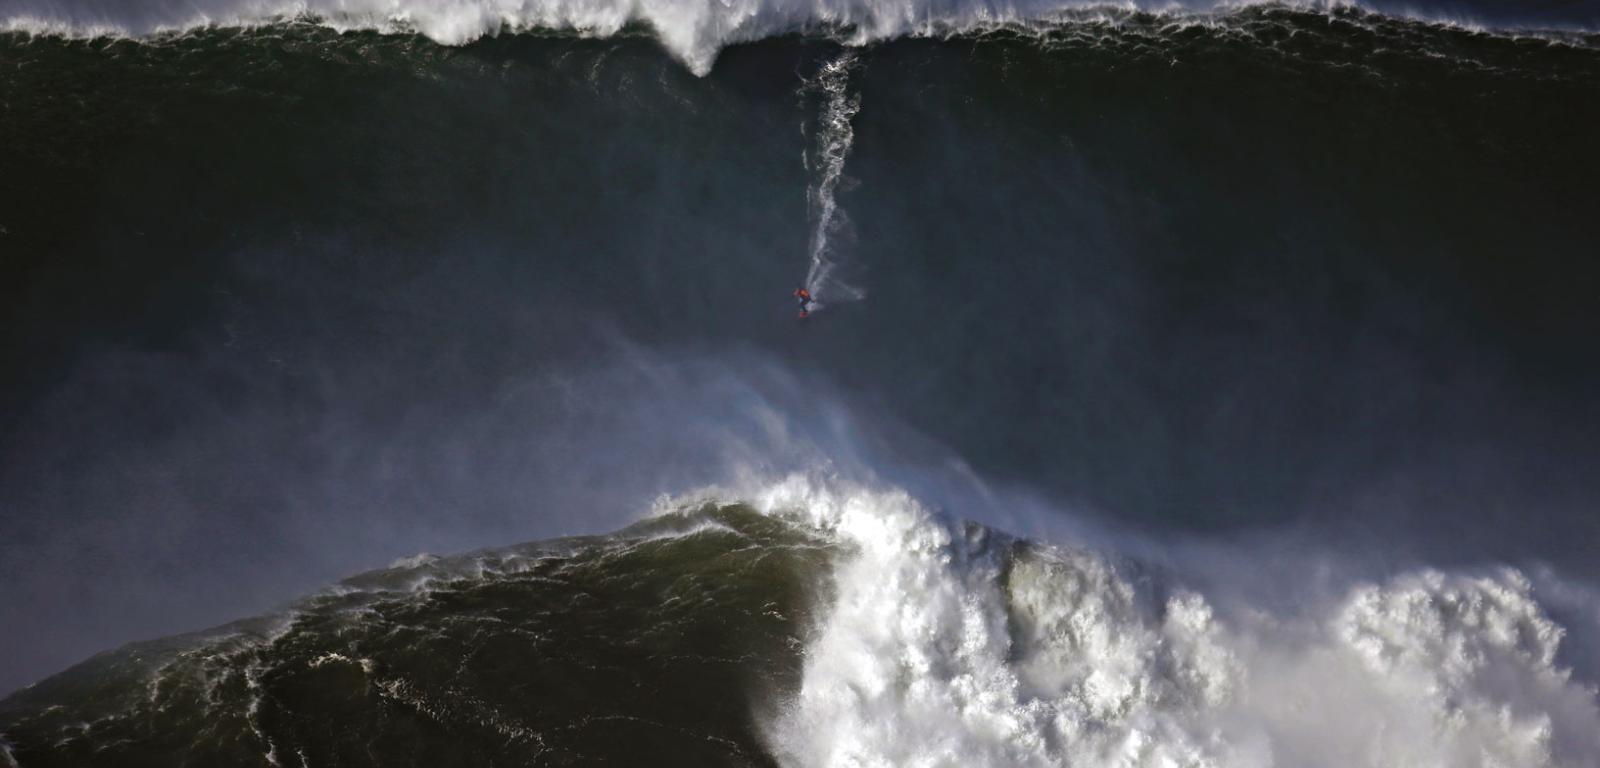 Najlepsi surferzy przybywają w takie miejsca, by poczuć dreszcz emocji towarzyszący zjeżdżaniu po falach gigantach.